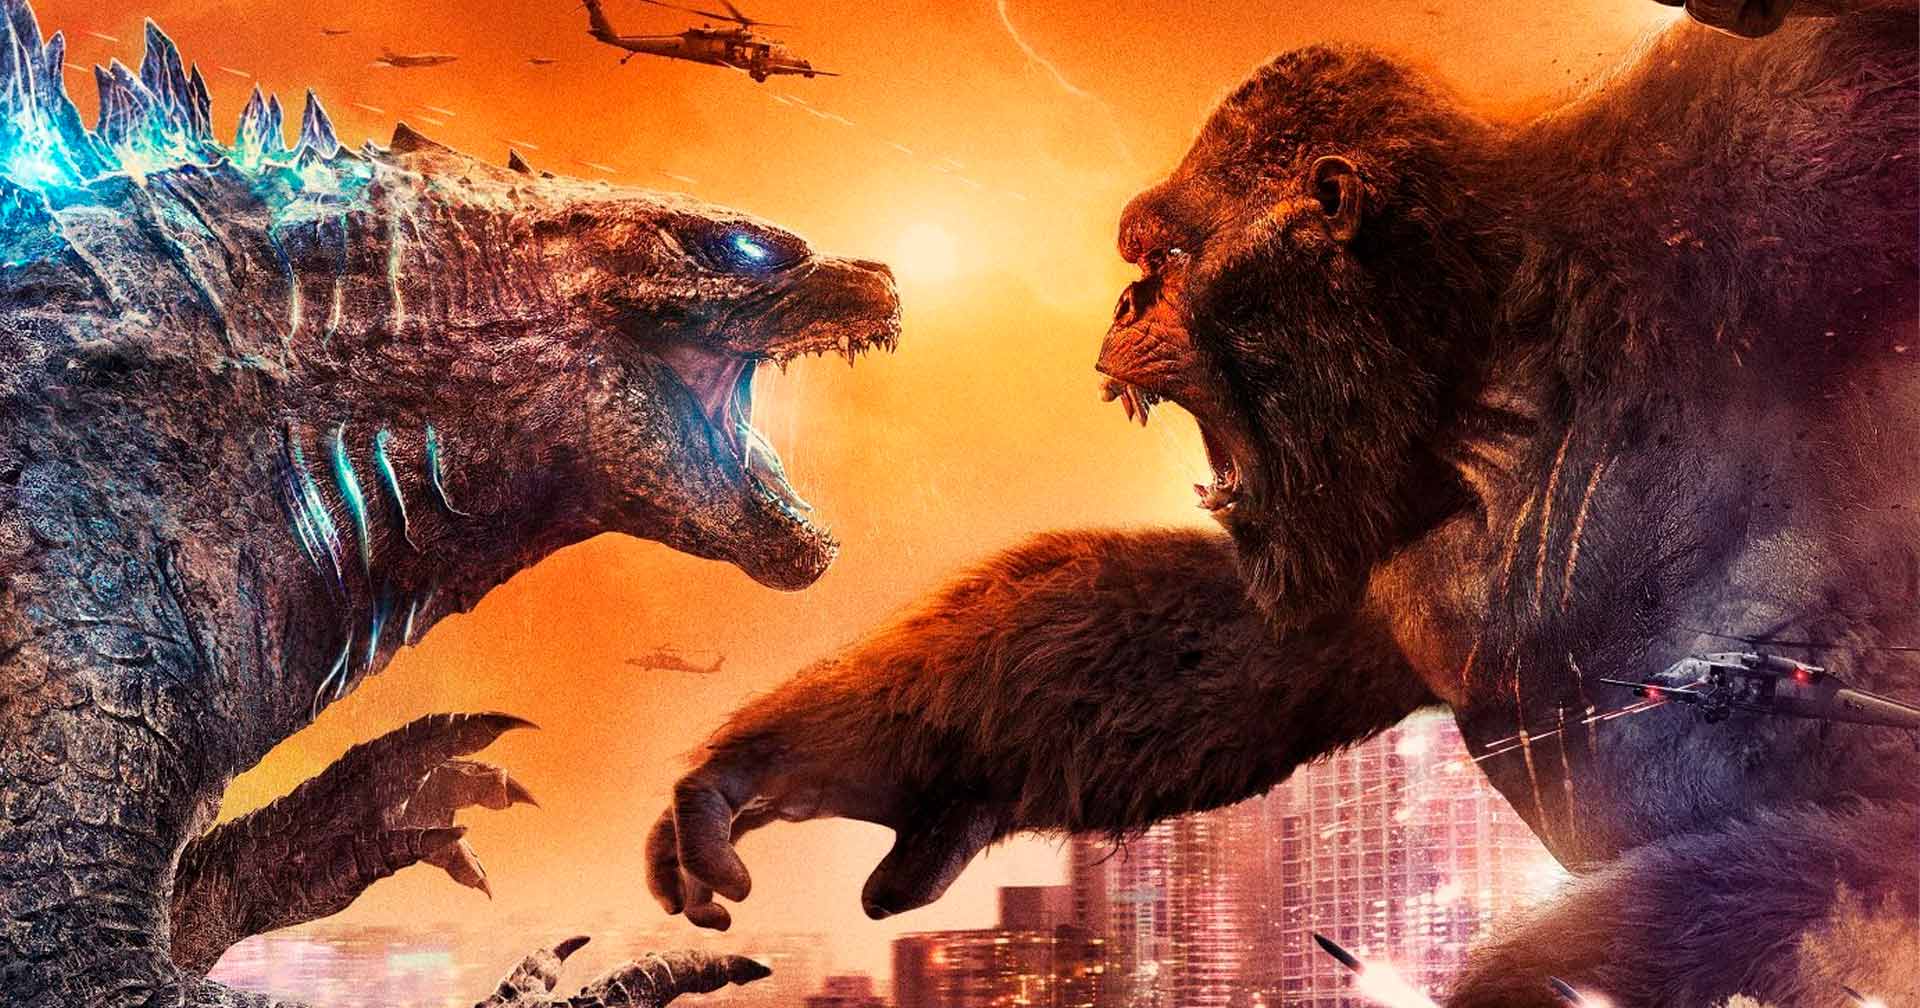 Godzilla vs. Kong | Diretor declara que filme não terminará em empate - Ingresso.com